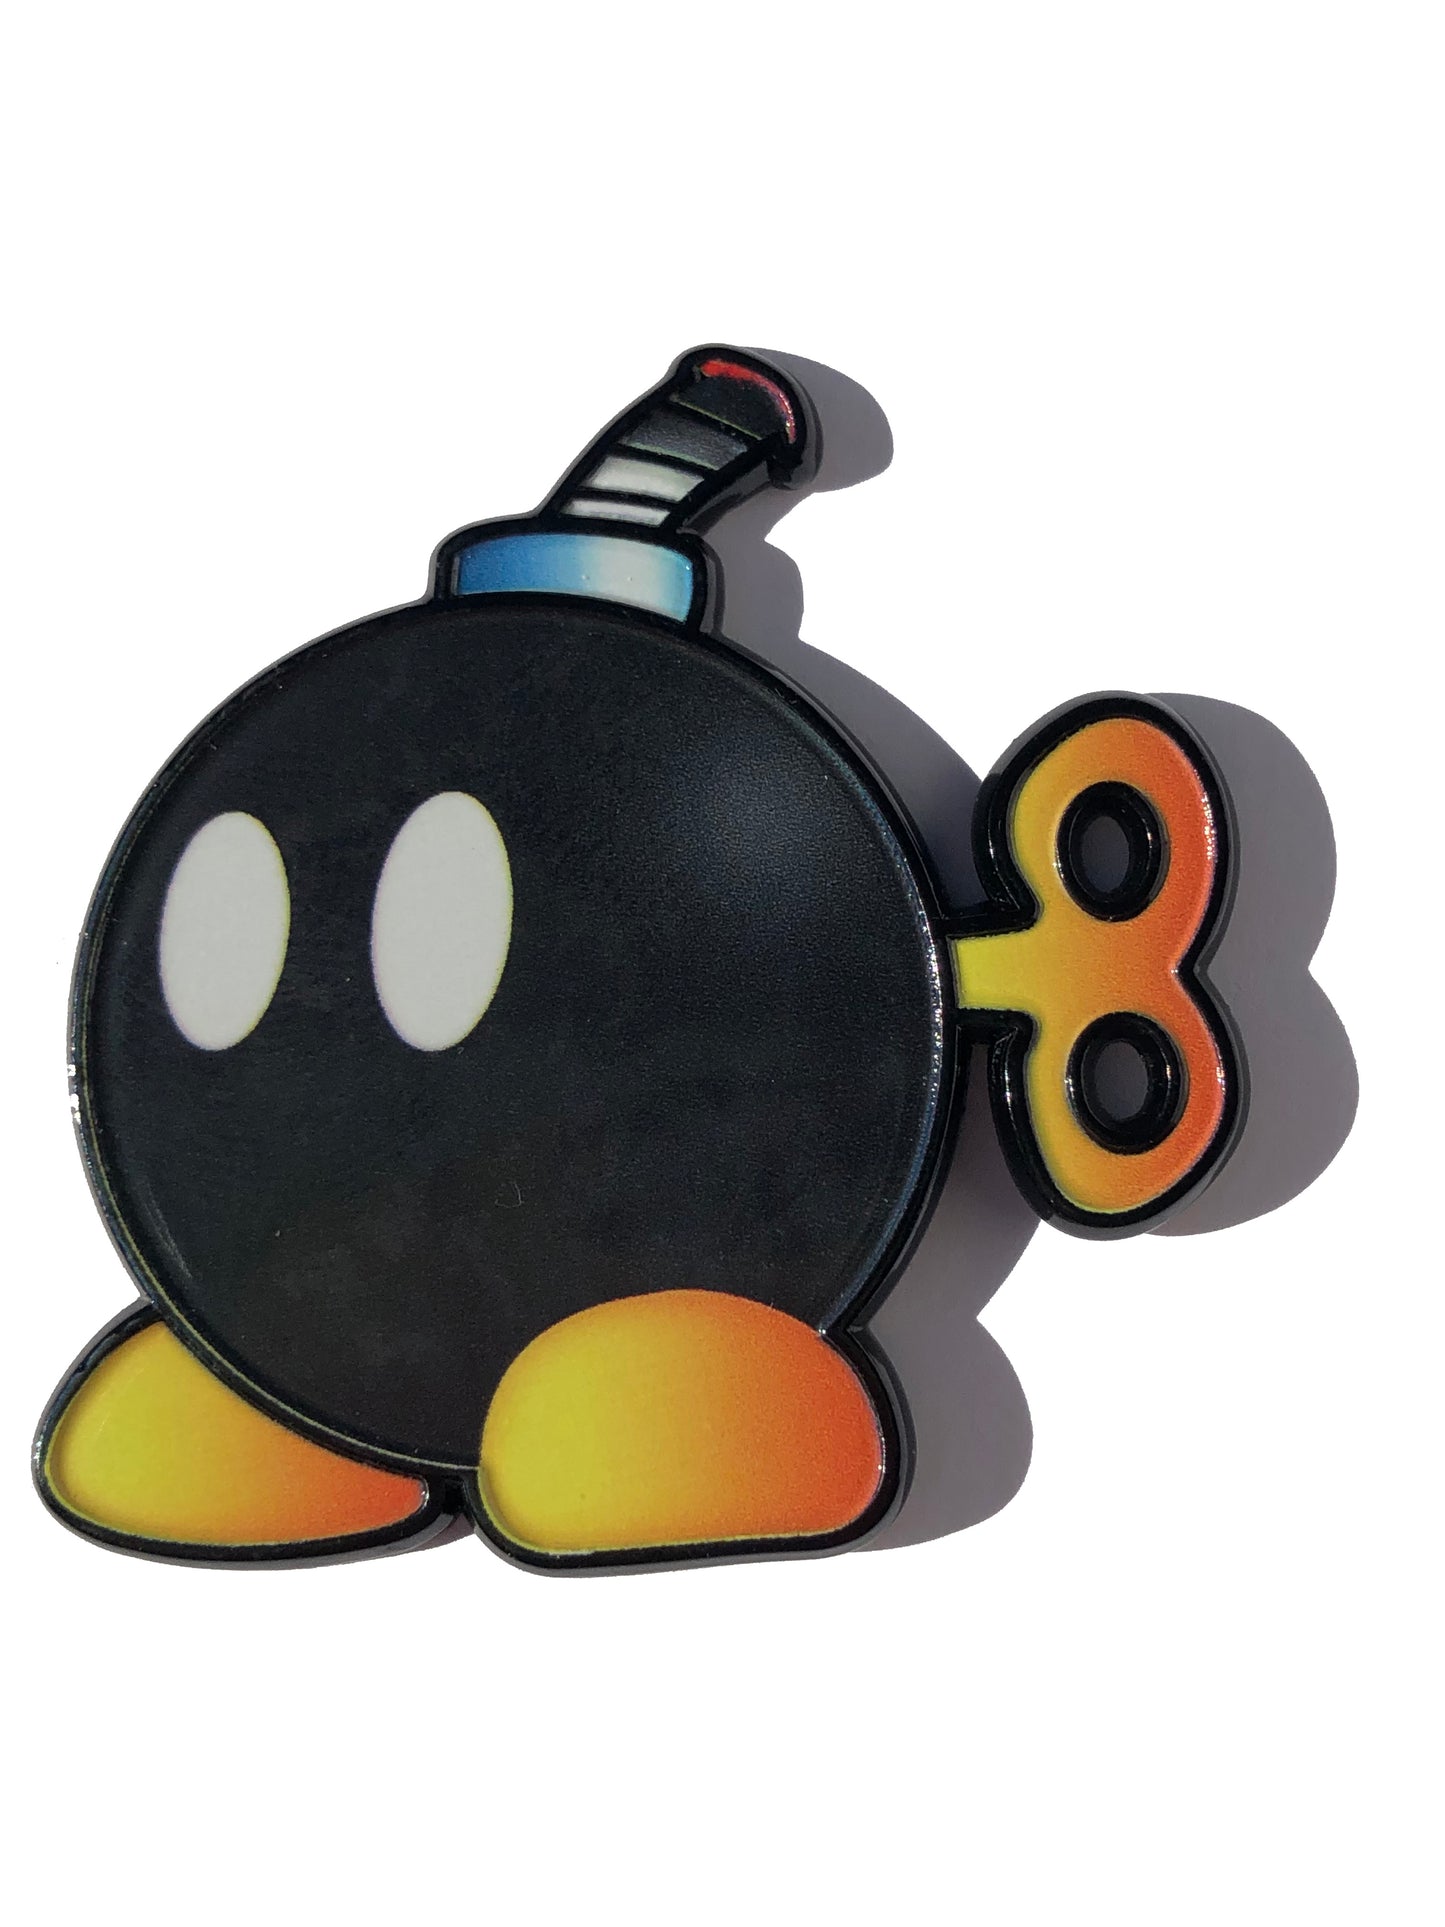 Bomb-Omb Mario Walking Bomb Pin